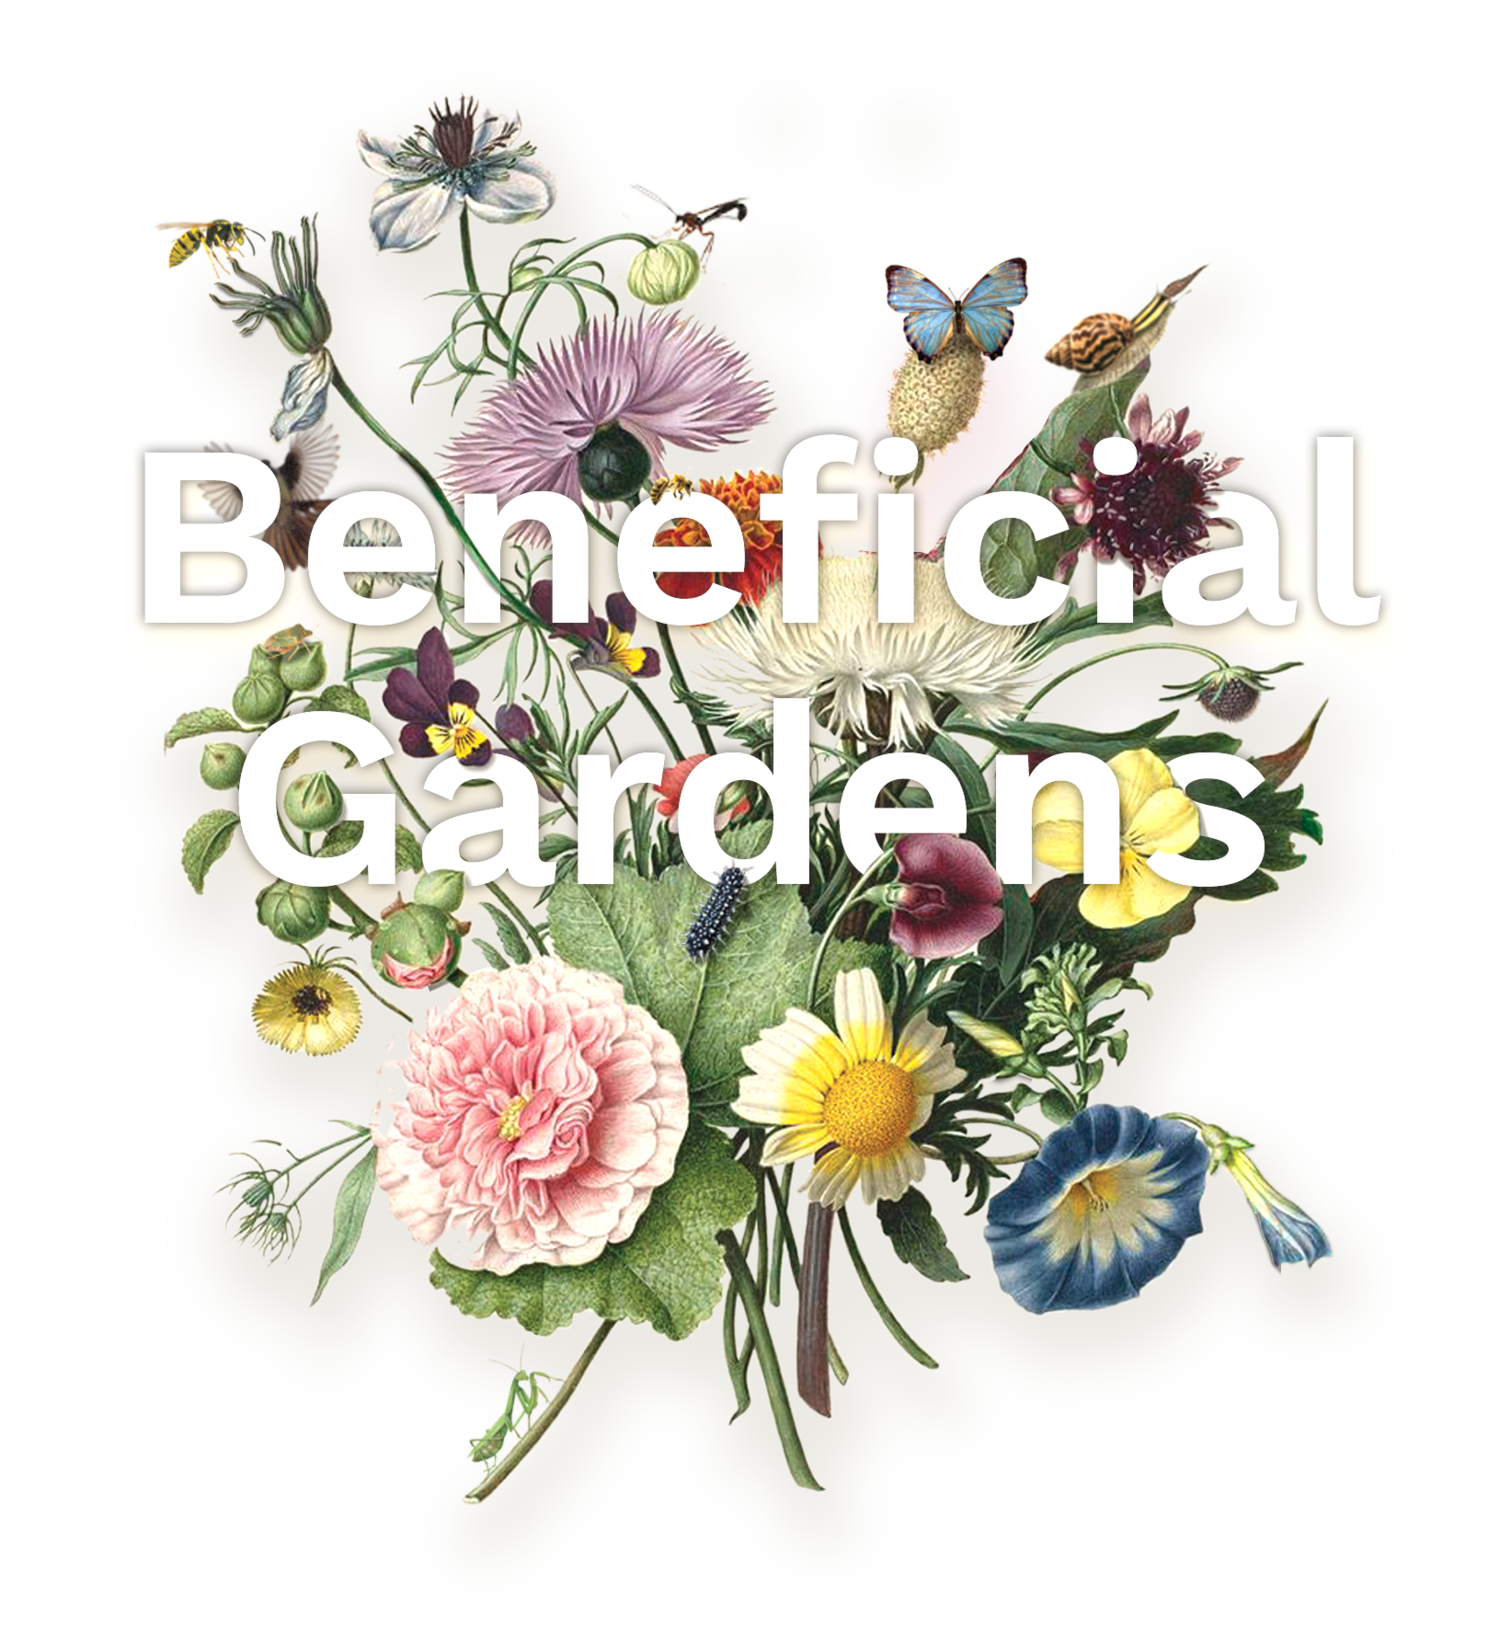 Beneficial Gardens